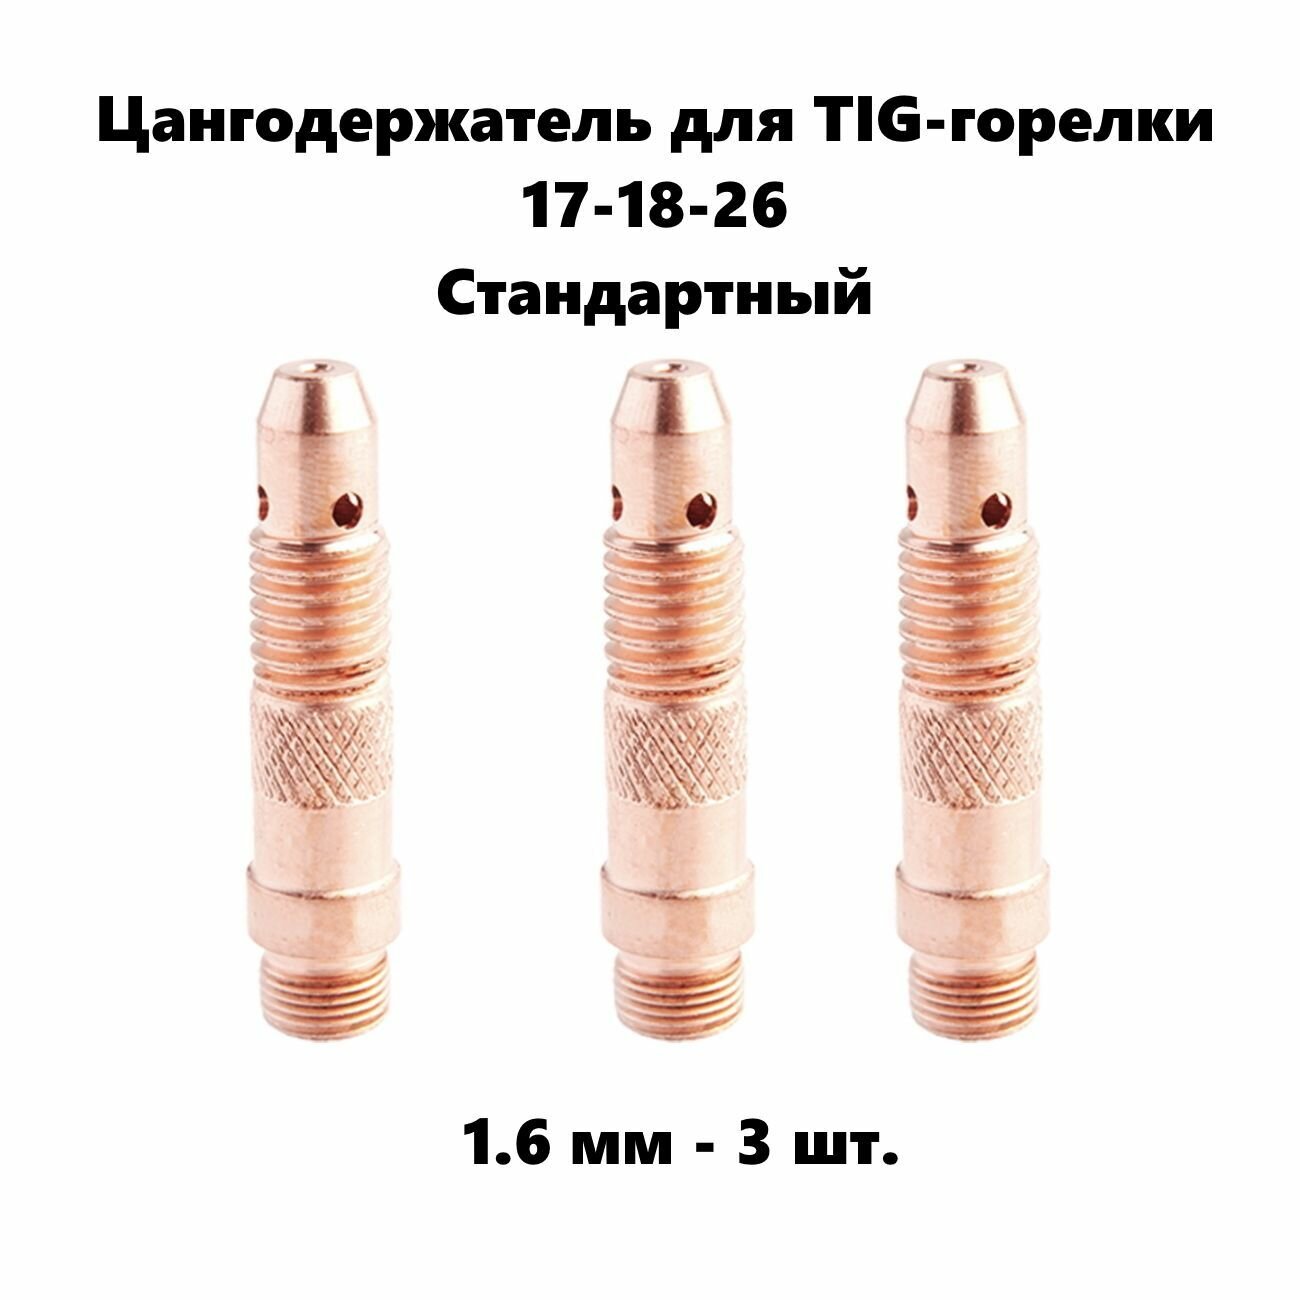 Цангодержатель 1,6 мм диаметр 3 шт. для Tig горелки 17-18-26 стандартный